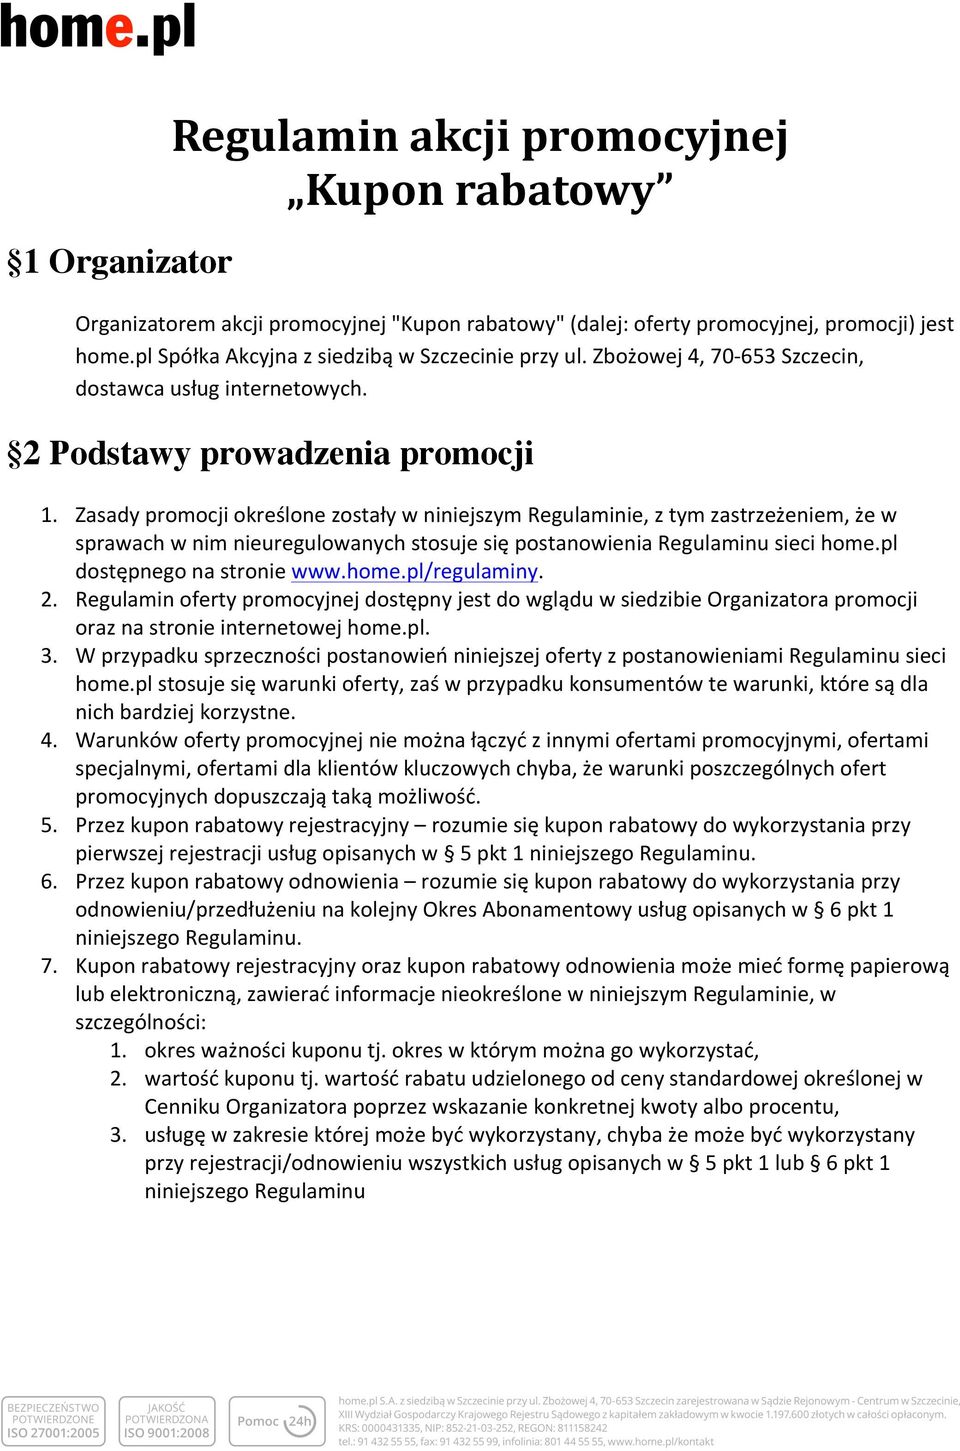 Zasady promocji określone zostały w niniejszym Regulaminie, z tym zastrzeżeniem, że w sprawach w nim nieuregulowanych stosuje się postanowienia Regulaminu sieci home.pl dostępnego na stronie www.home.pl/regulaminy.